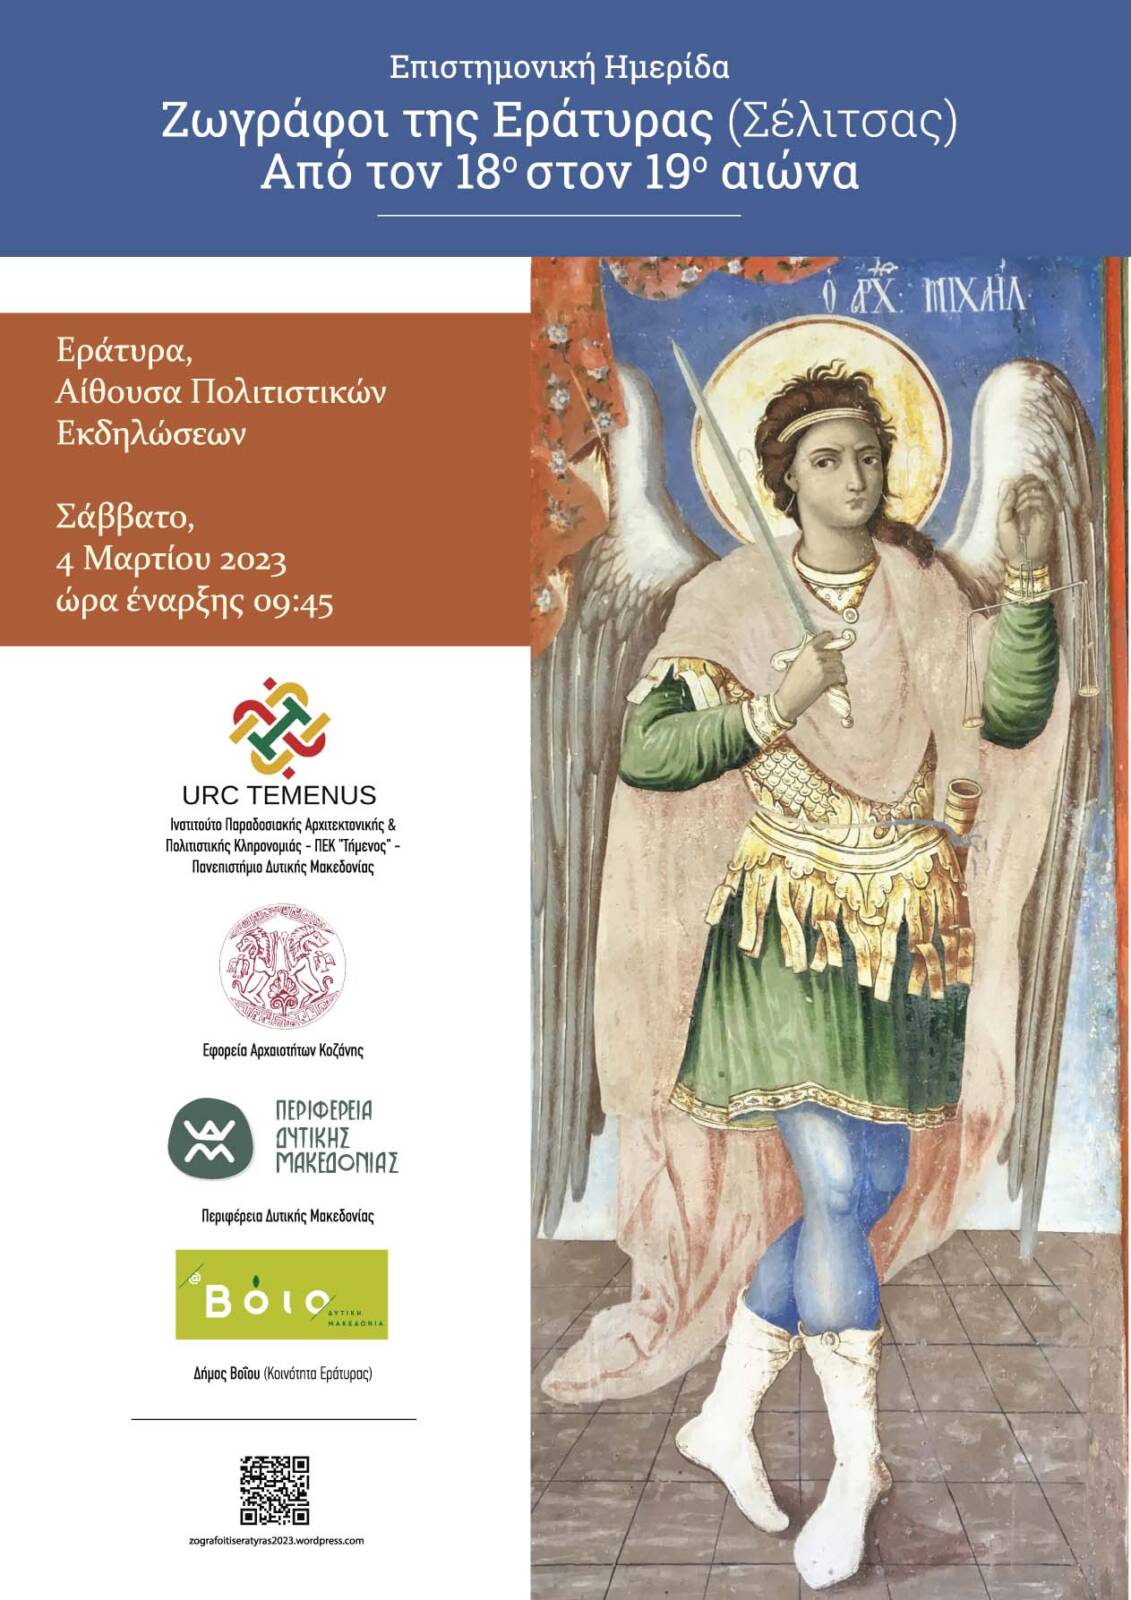 Εφορεία Αρχαιοτήτων Κοζάνης: Απολογιστικό Δελτίο Τύπου της επιστημονικής ημερίδας «Ζωγράφοι της Εράτυρας (Σέλιτσας)